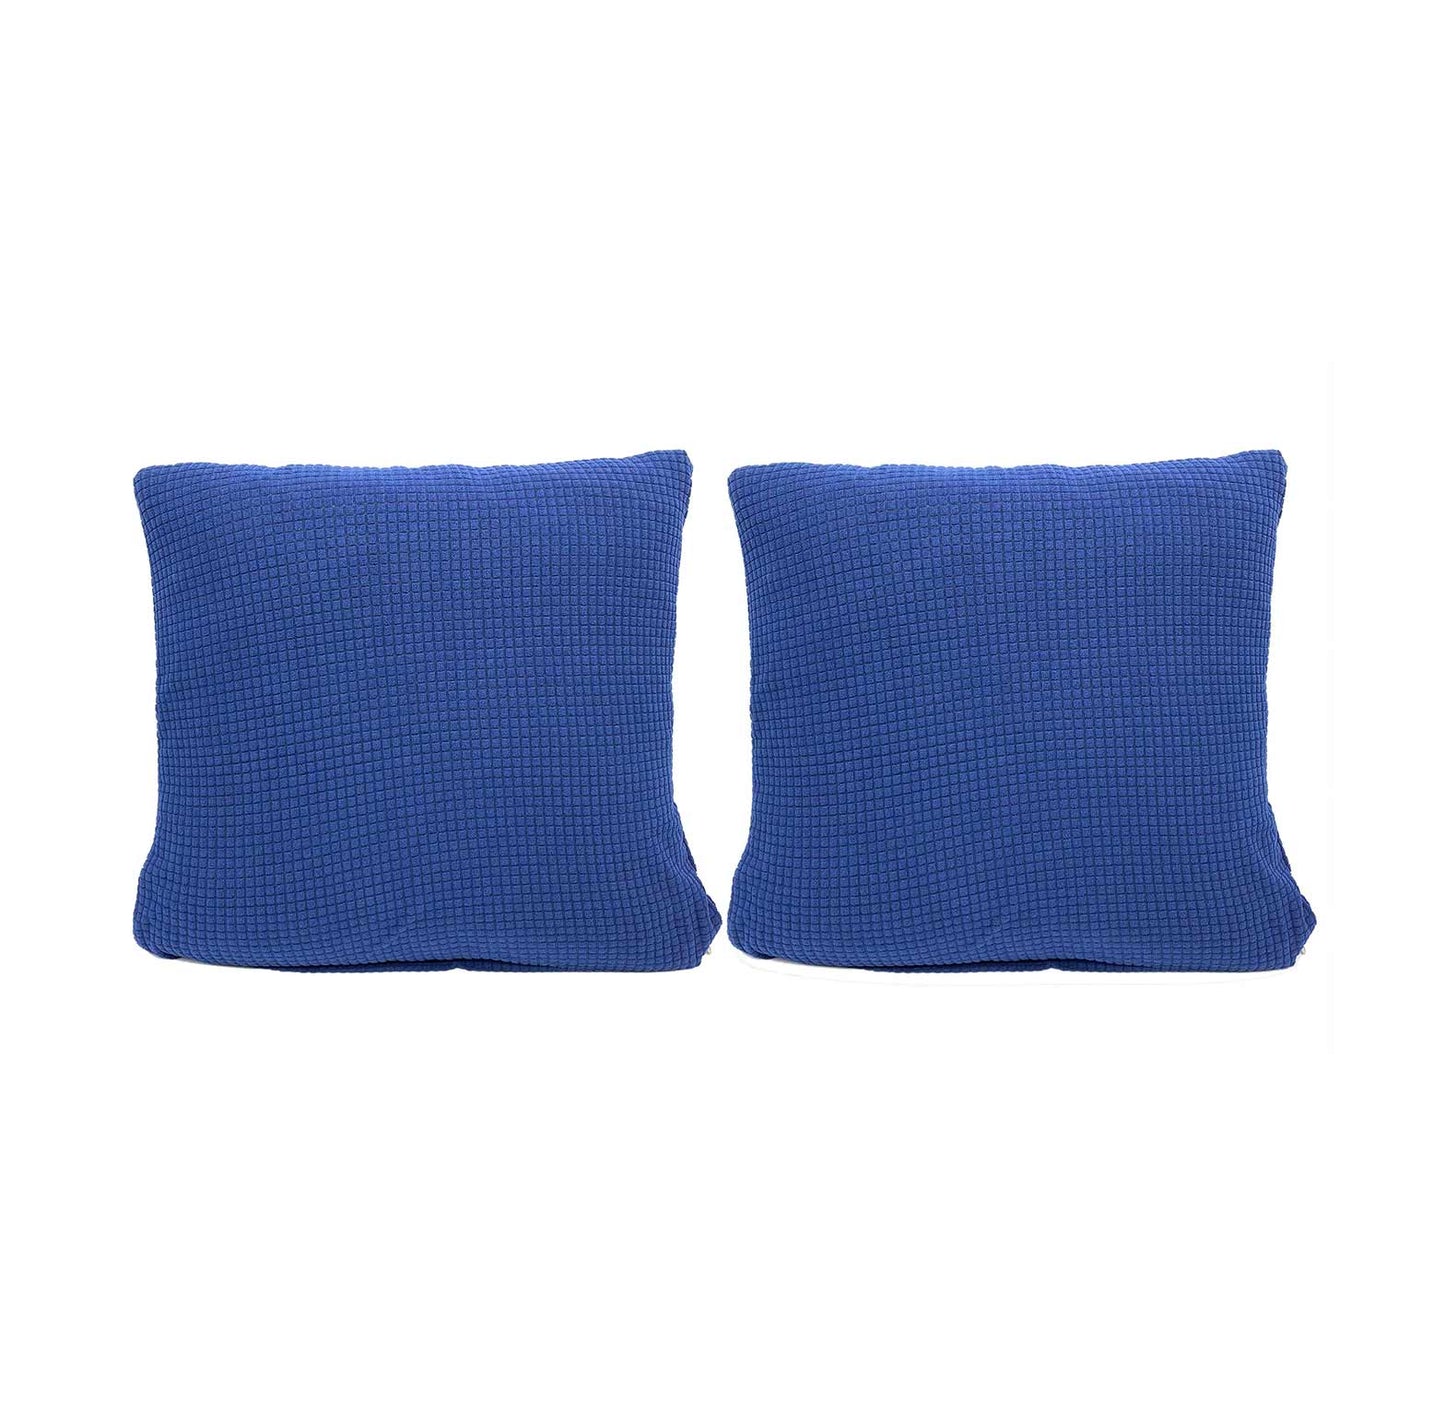 Jacquard Sofa Slipcover - Dark Blue